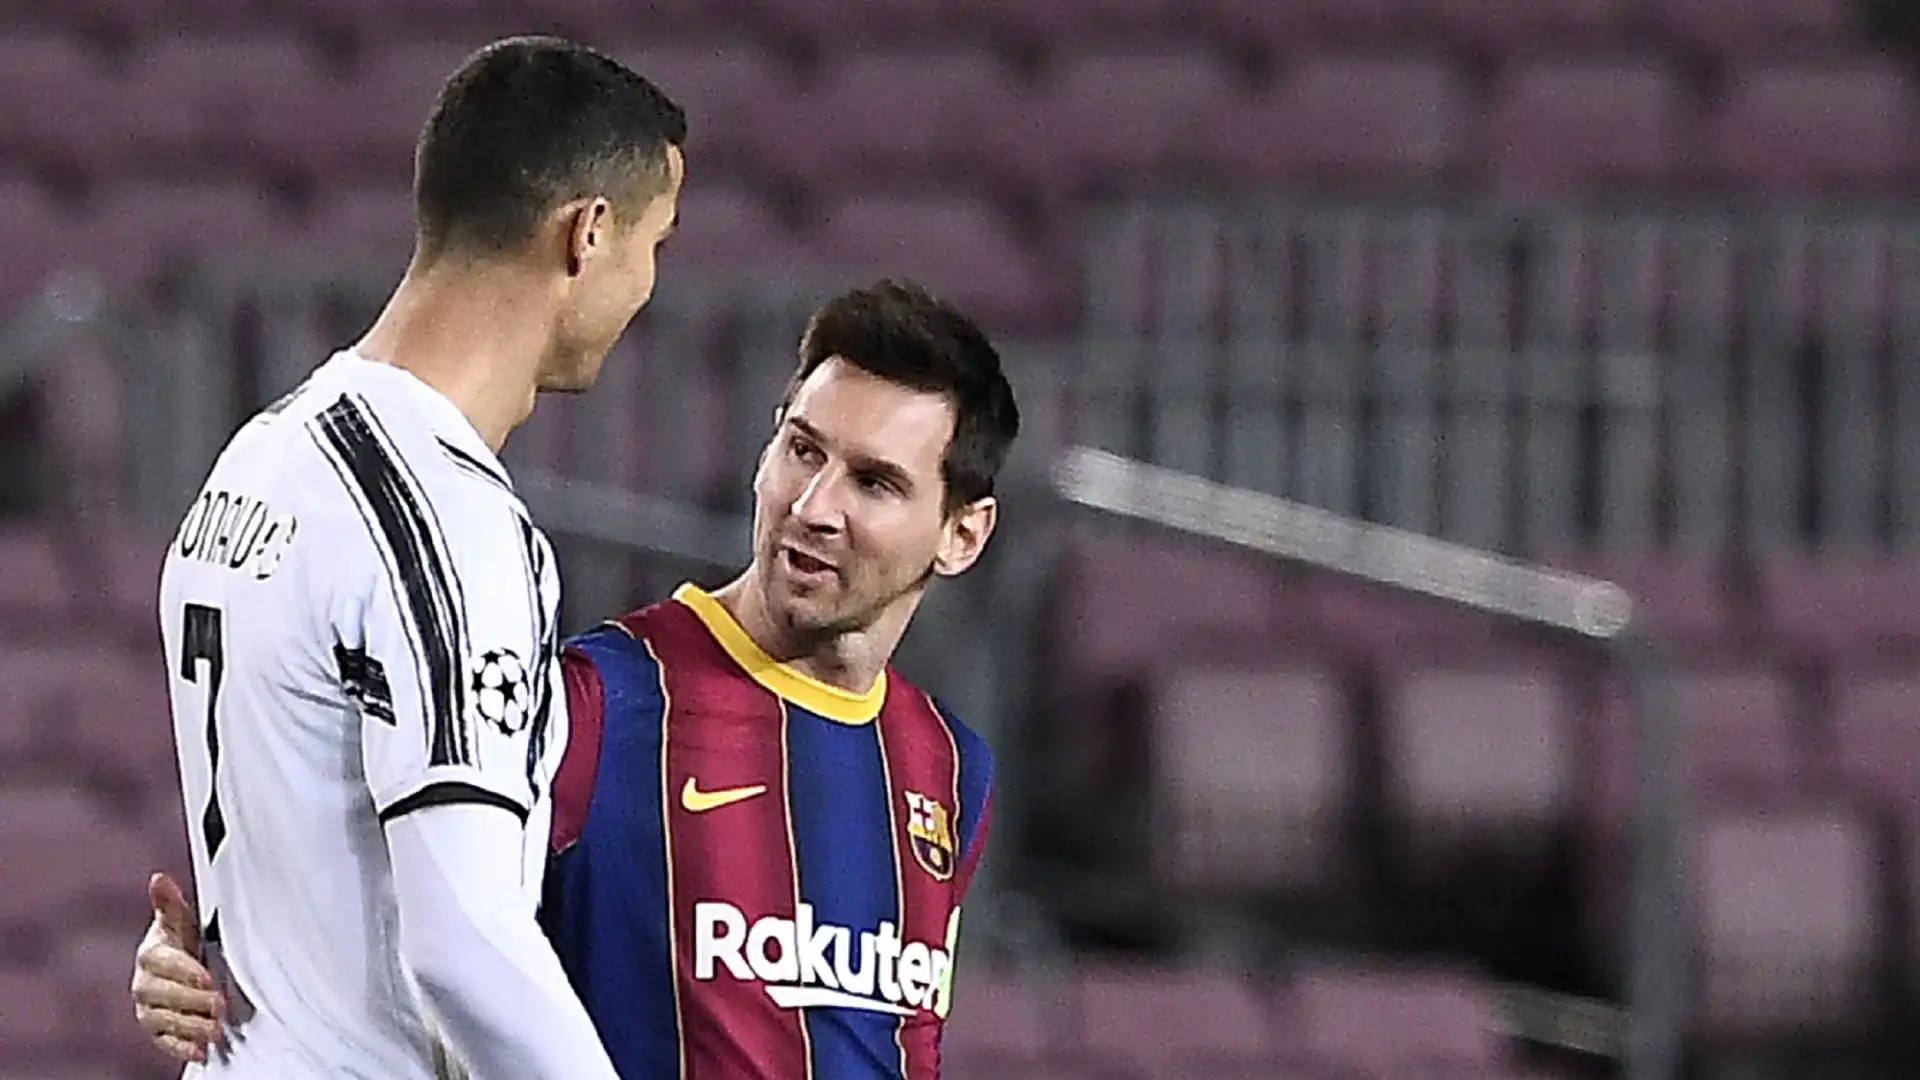 "La rivalità è scomparsa: chi ama CR7 non deve odiare Messi", ha detto Ronaldo dal ritiro della Nazionale portoghese